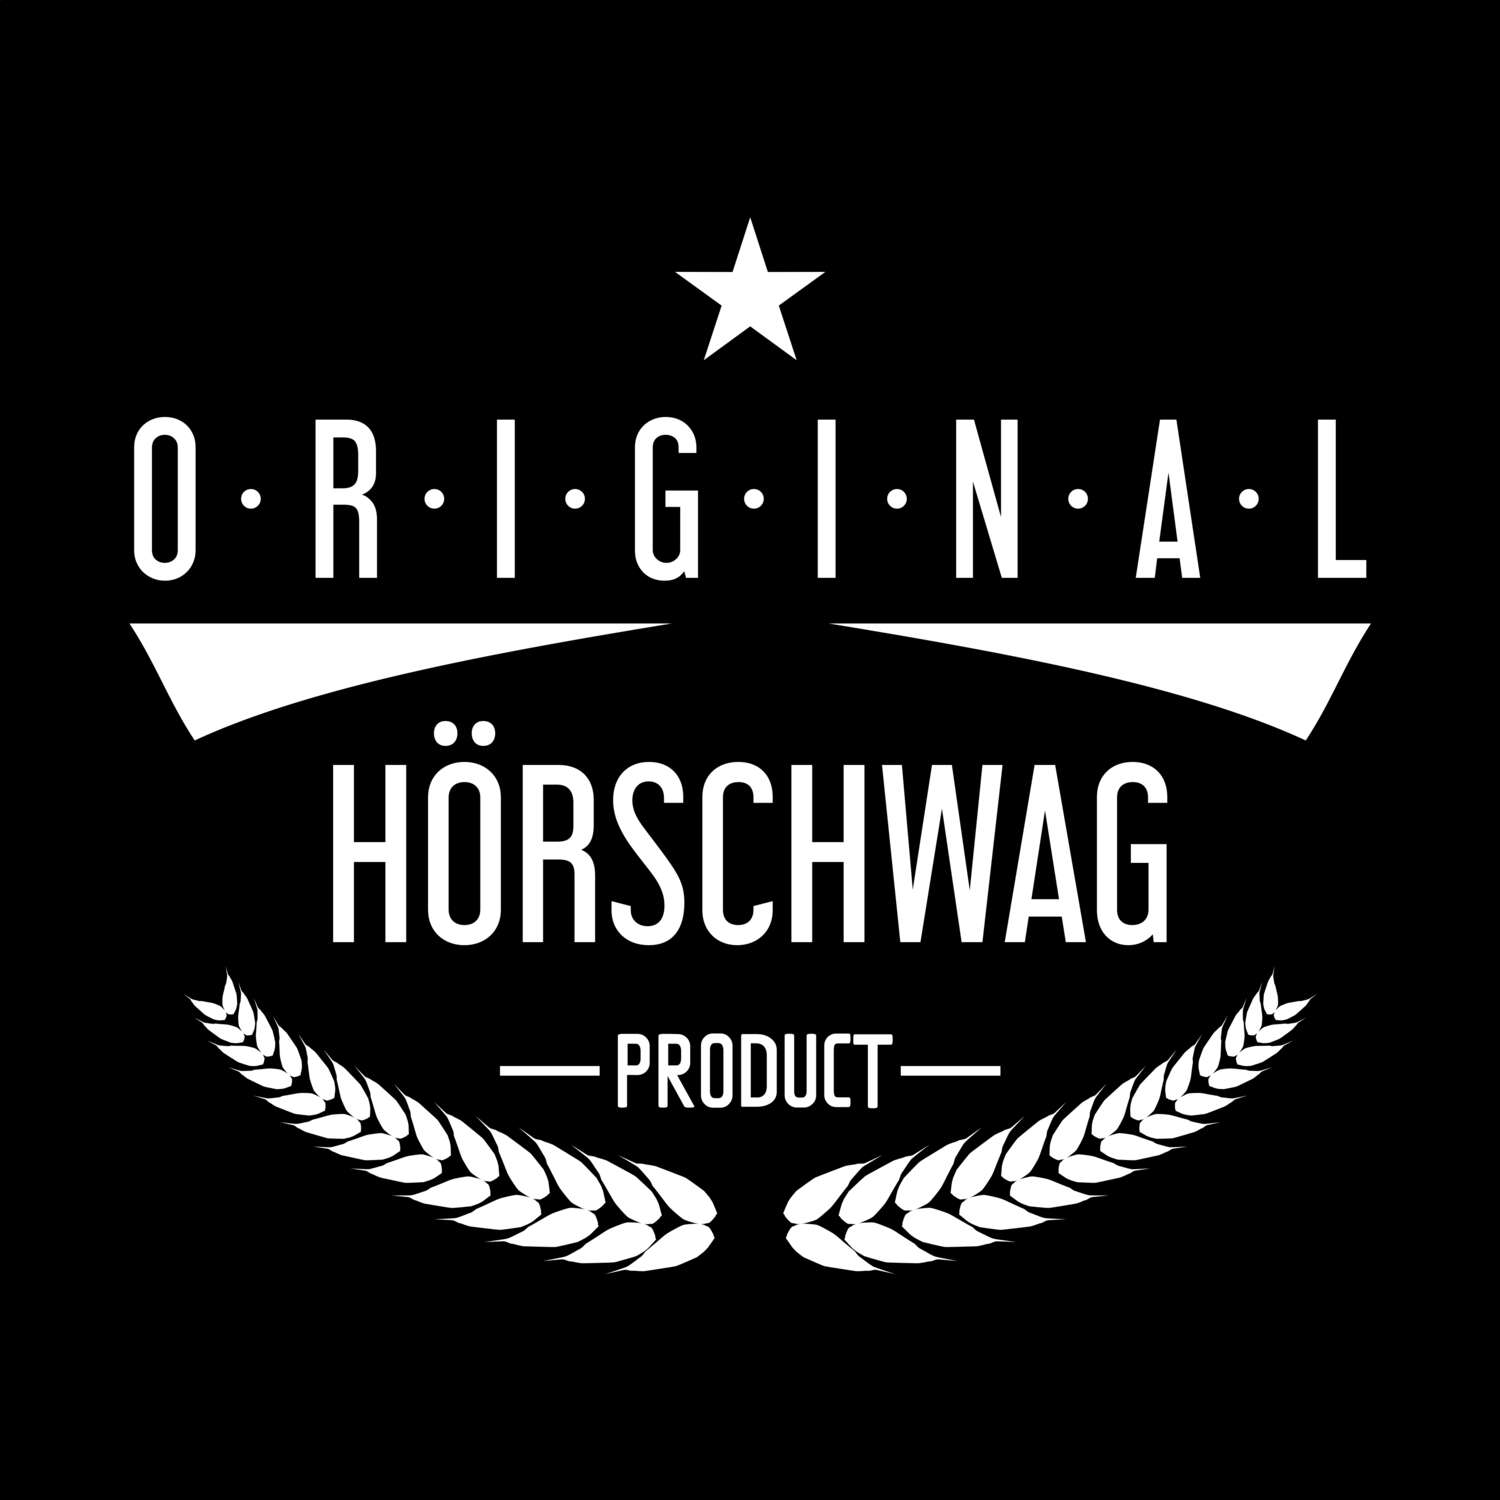 Hörschwag T-Shirt »Original Product«